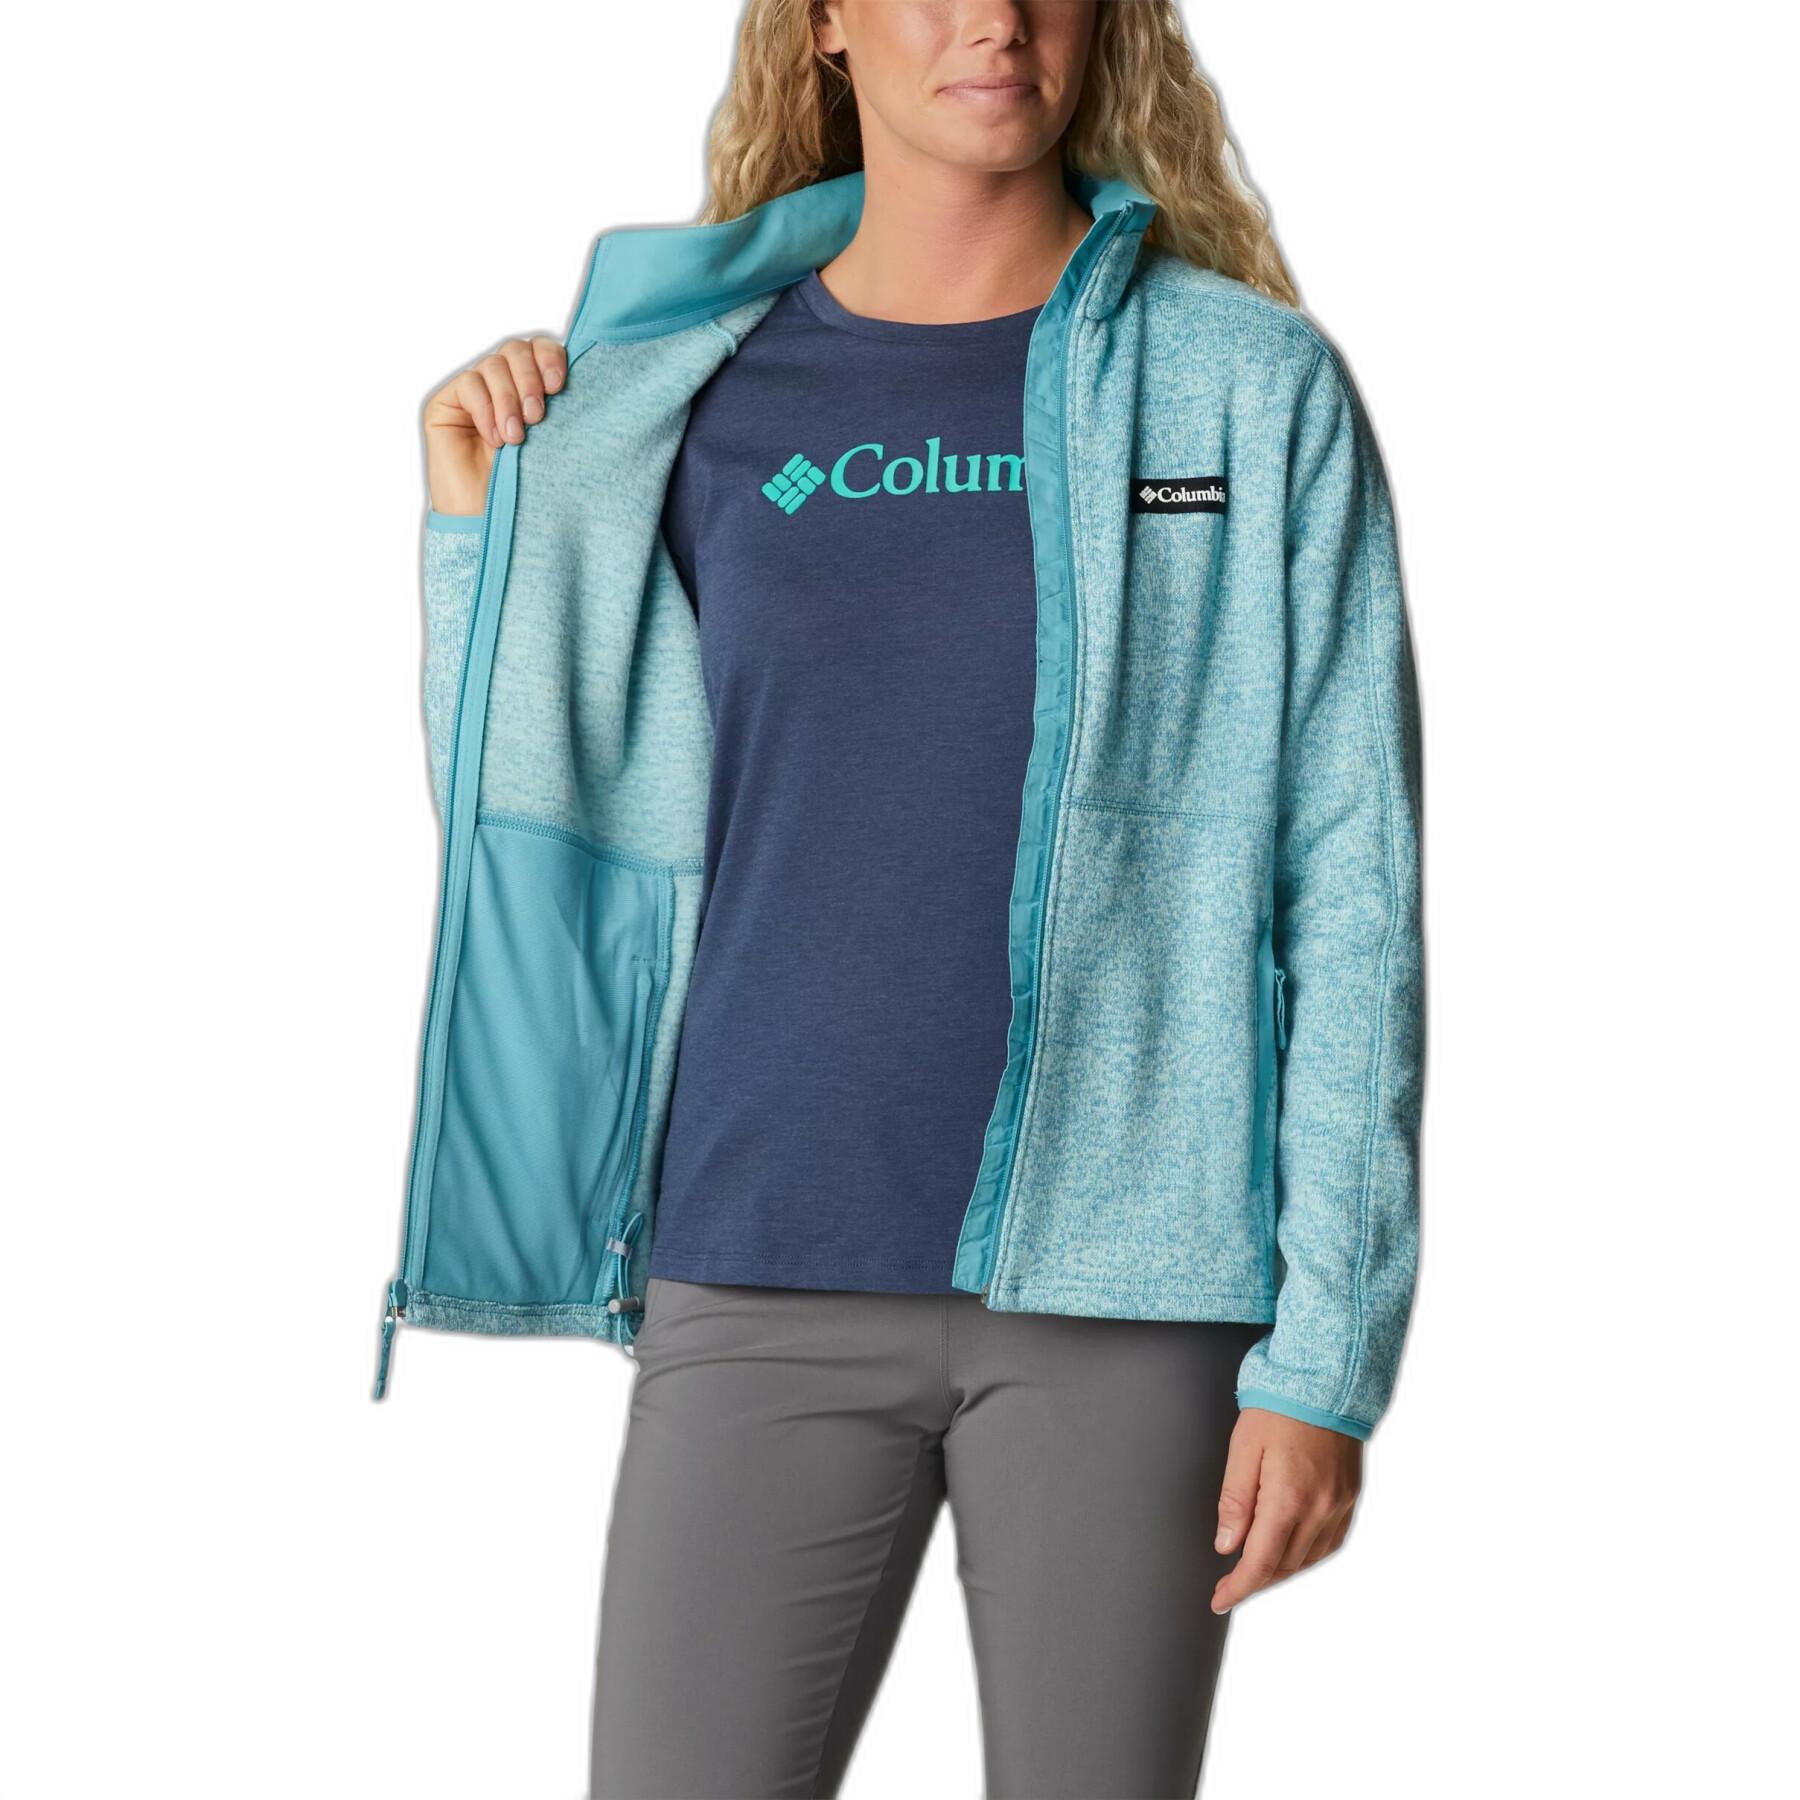 Women's full zip sweatshirt Columbia Sweater Weather